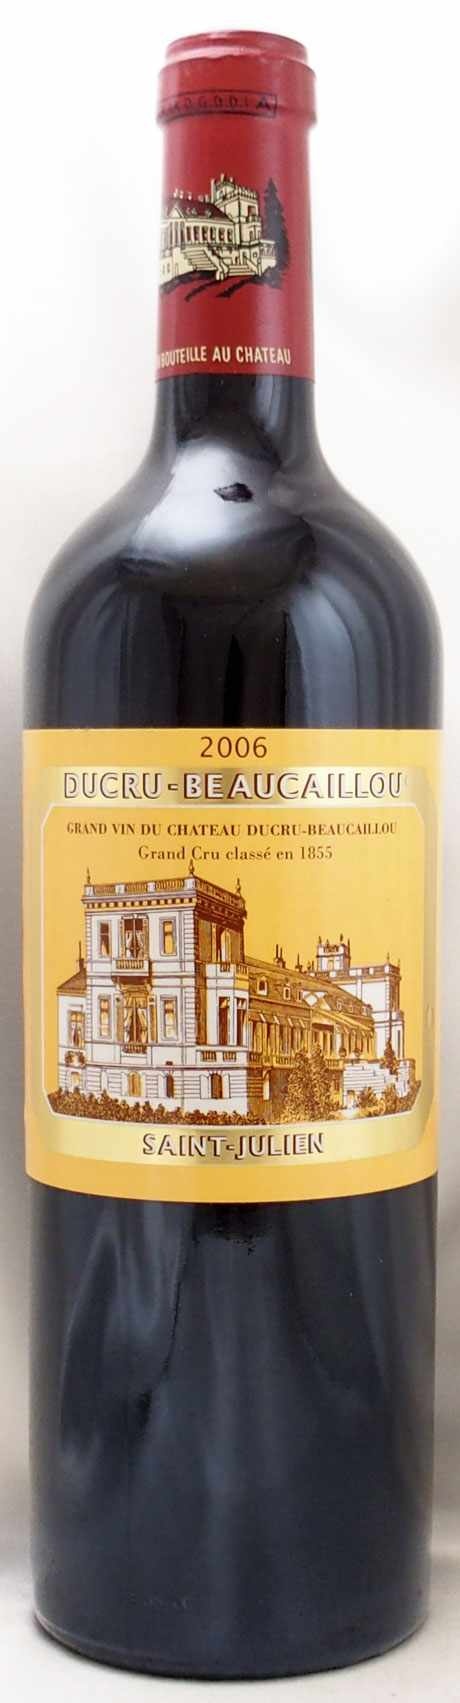 ワイン デュクリュ・ボーカイユ2005 レオヴィル・ラスカーズ2005 - 飲料/酒